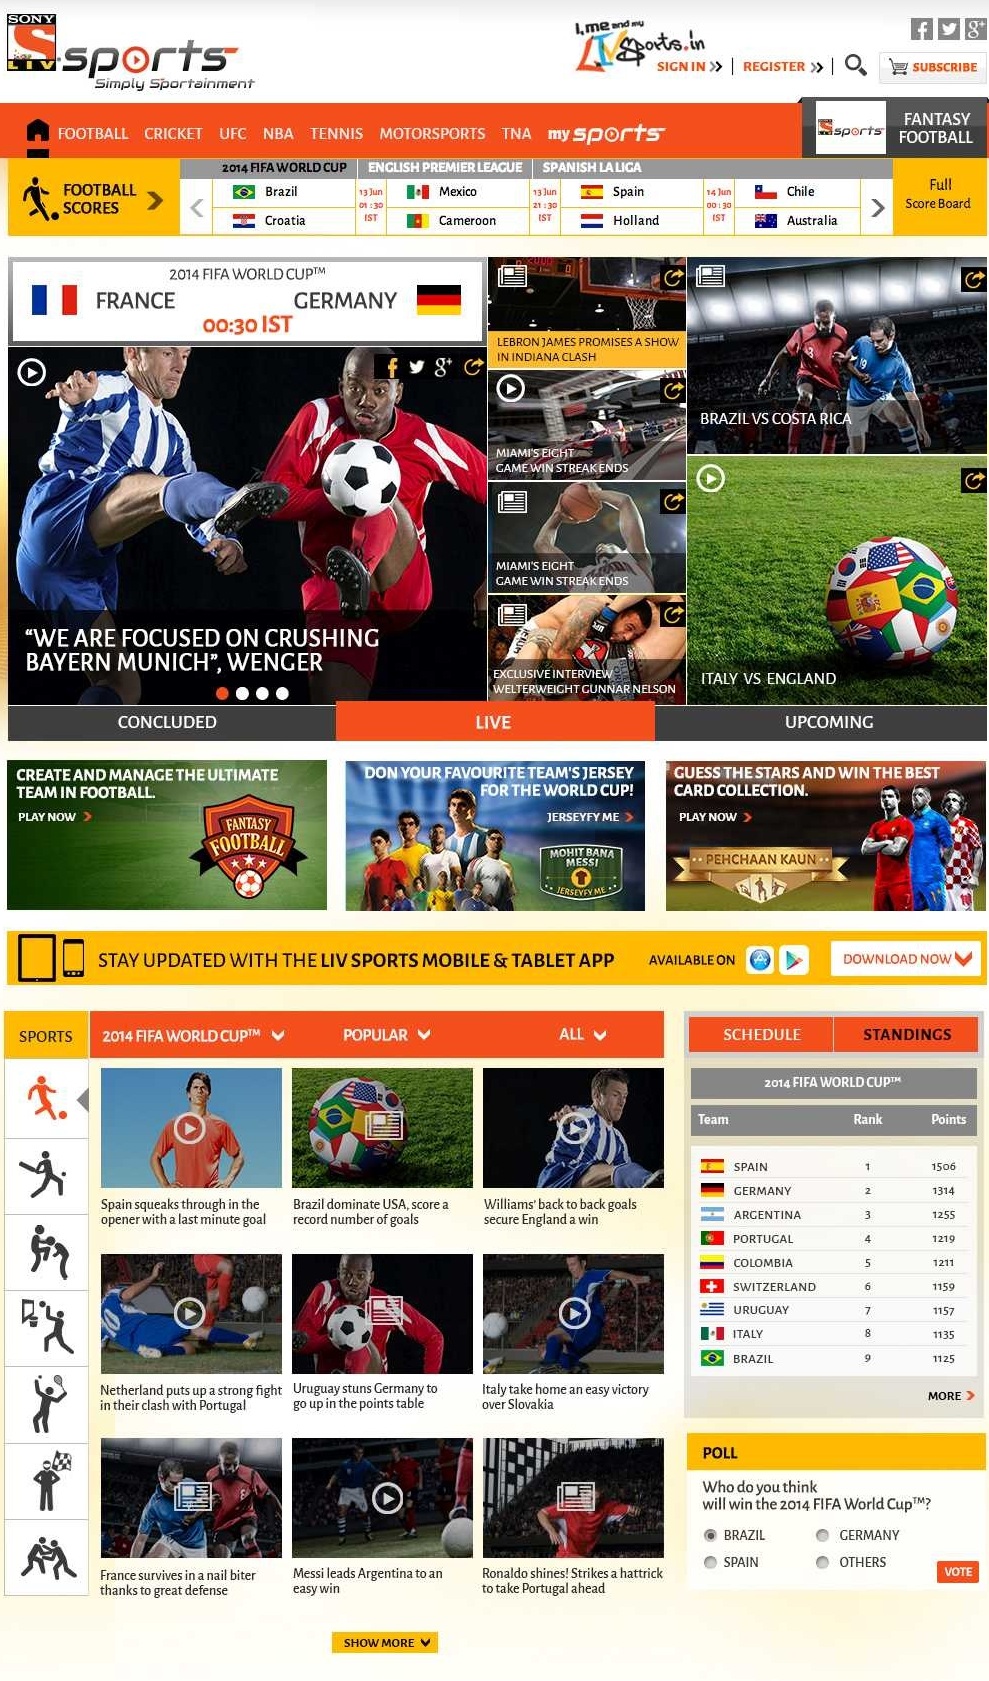 Multi-Screen Media meluncurkan aplikasi seluler resmi untuk Piala Dunia FIFA 2014 3